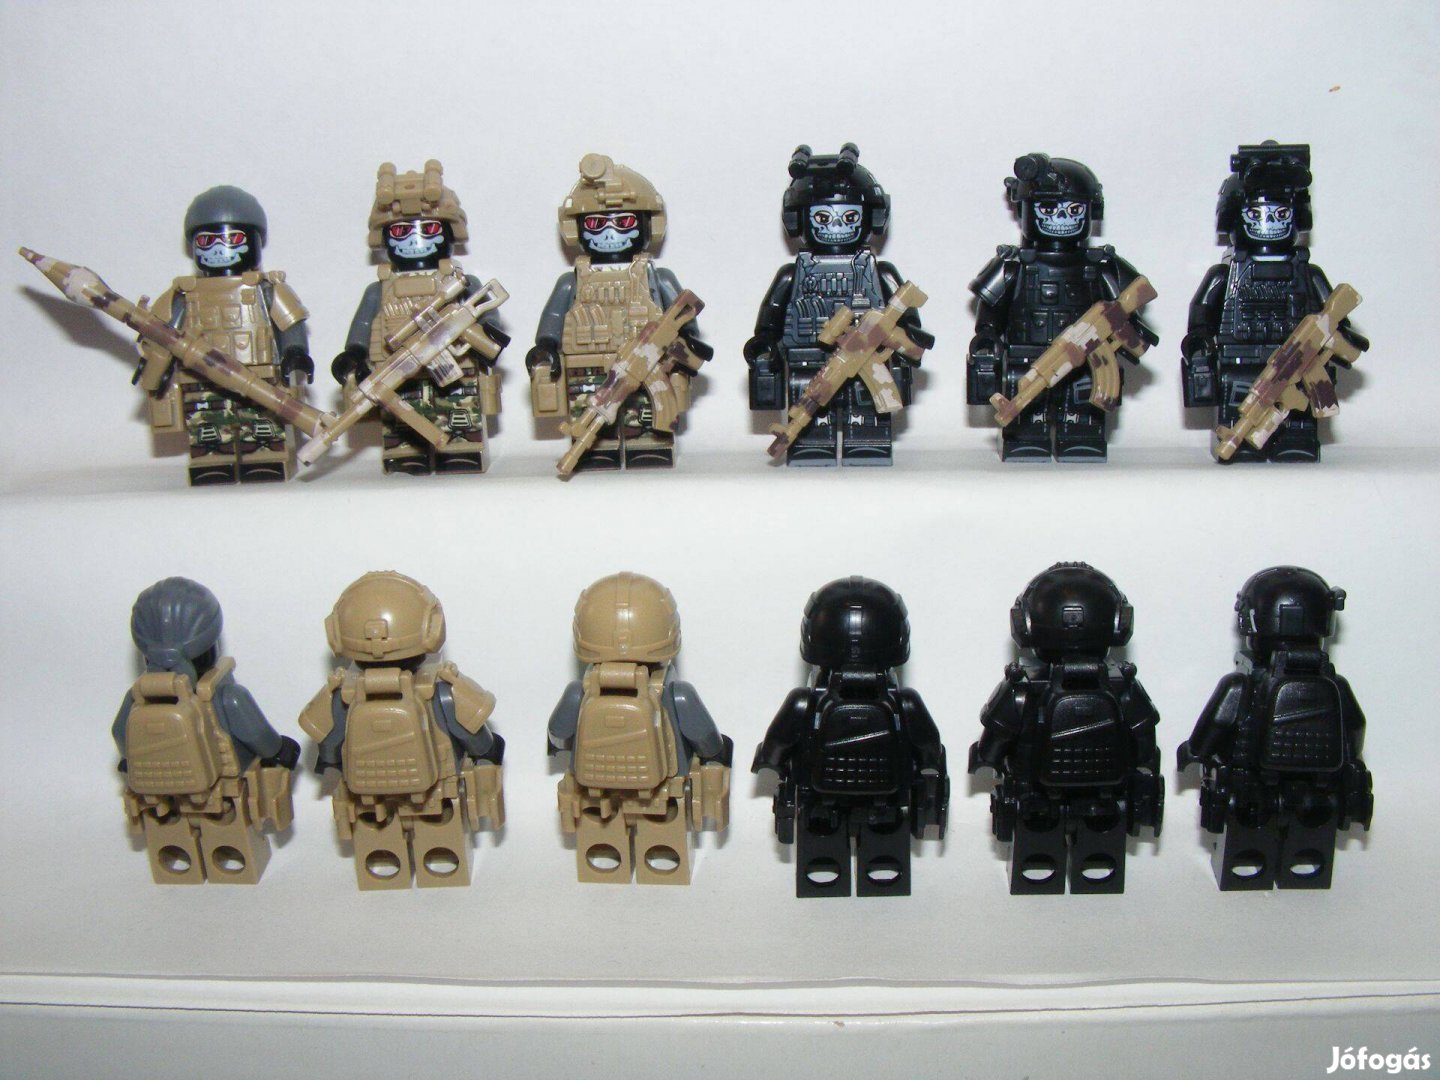 Lego SWAT Kommandós+ terrorista figurák katona Brickarms fegyver 6db